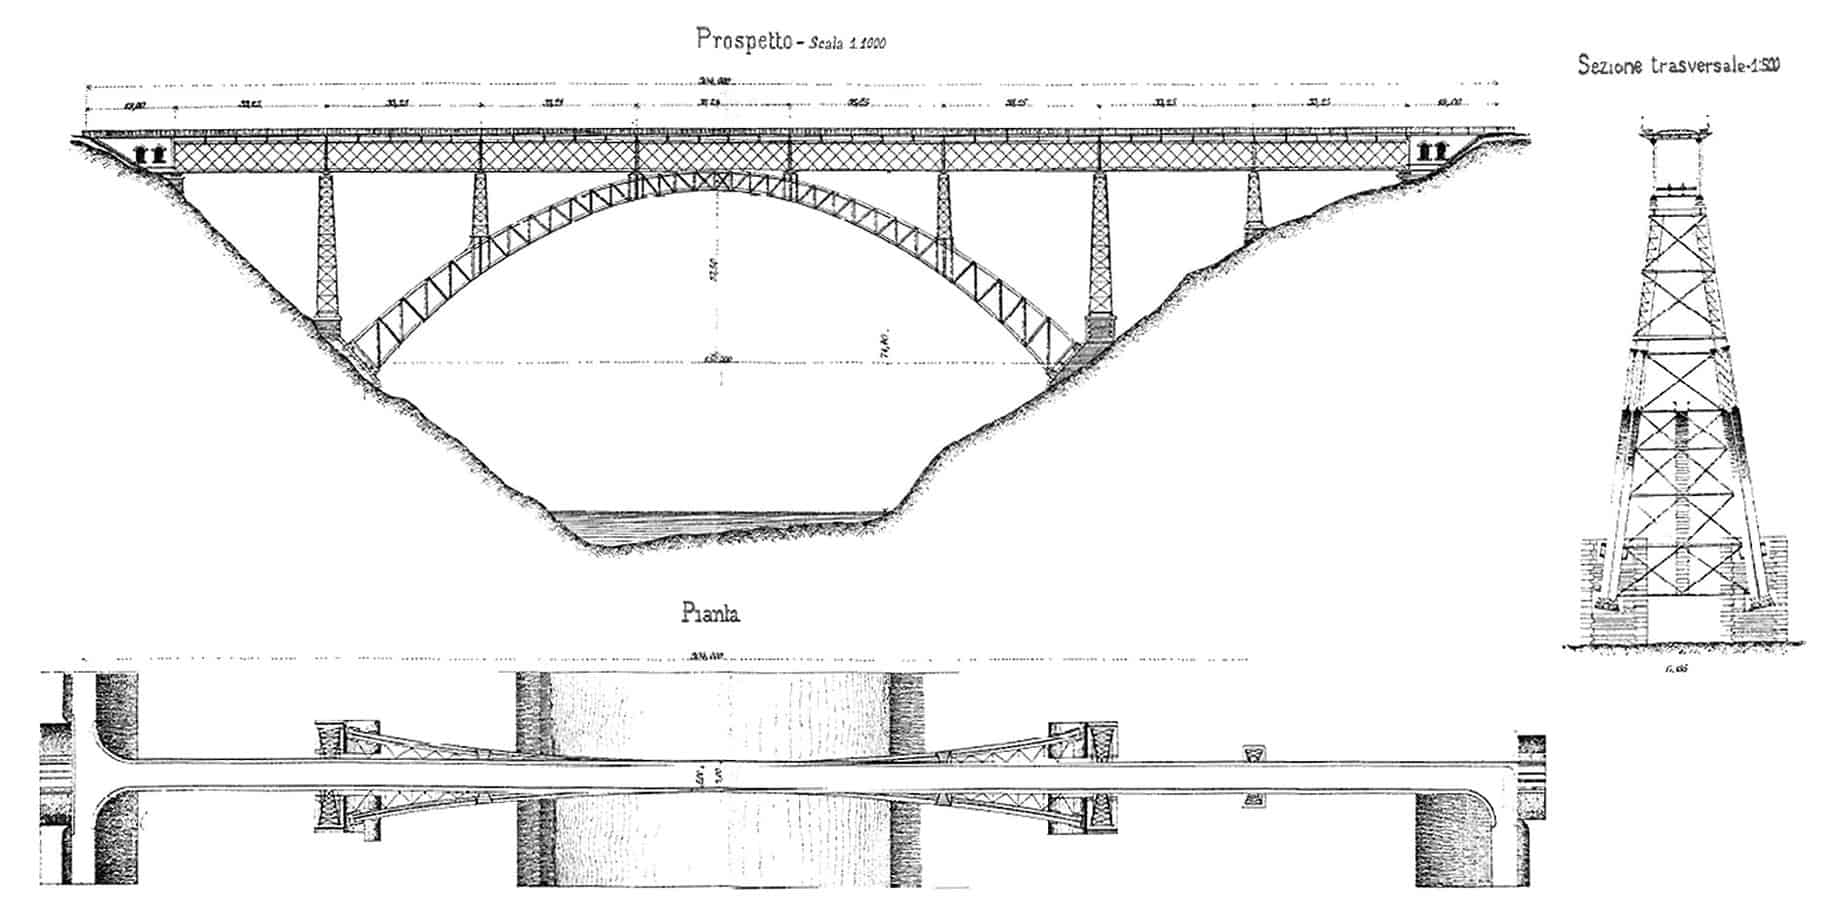 Prospetto, pianta e sezione trasversale del ponte sull'Adda a Paderno